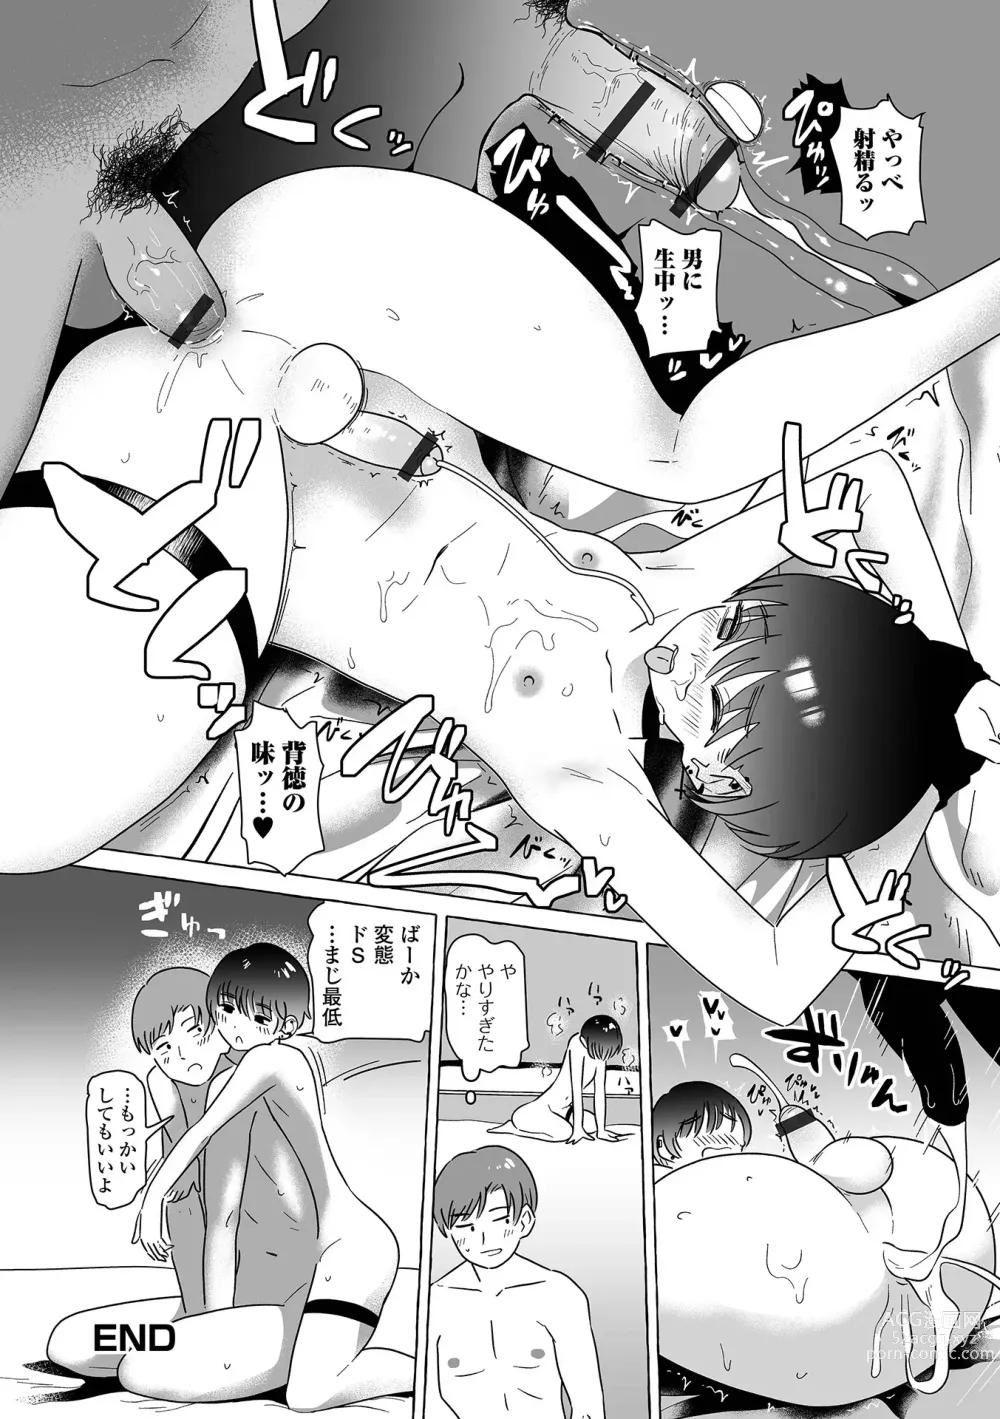 Page 98 of manga Gekkan Web Otoko no Ko-llection! S Vol. 95